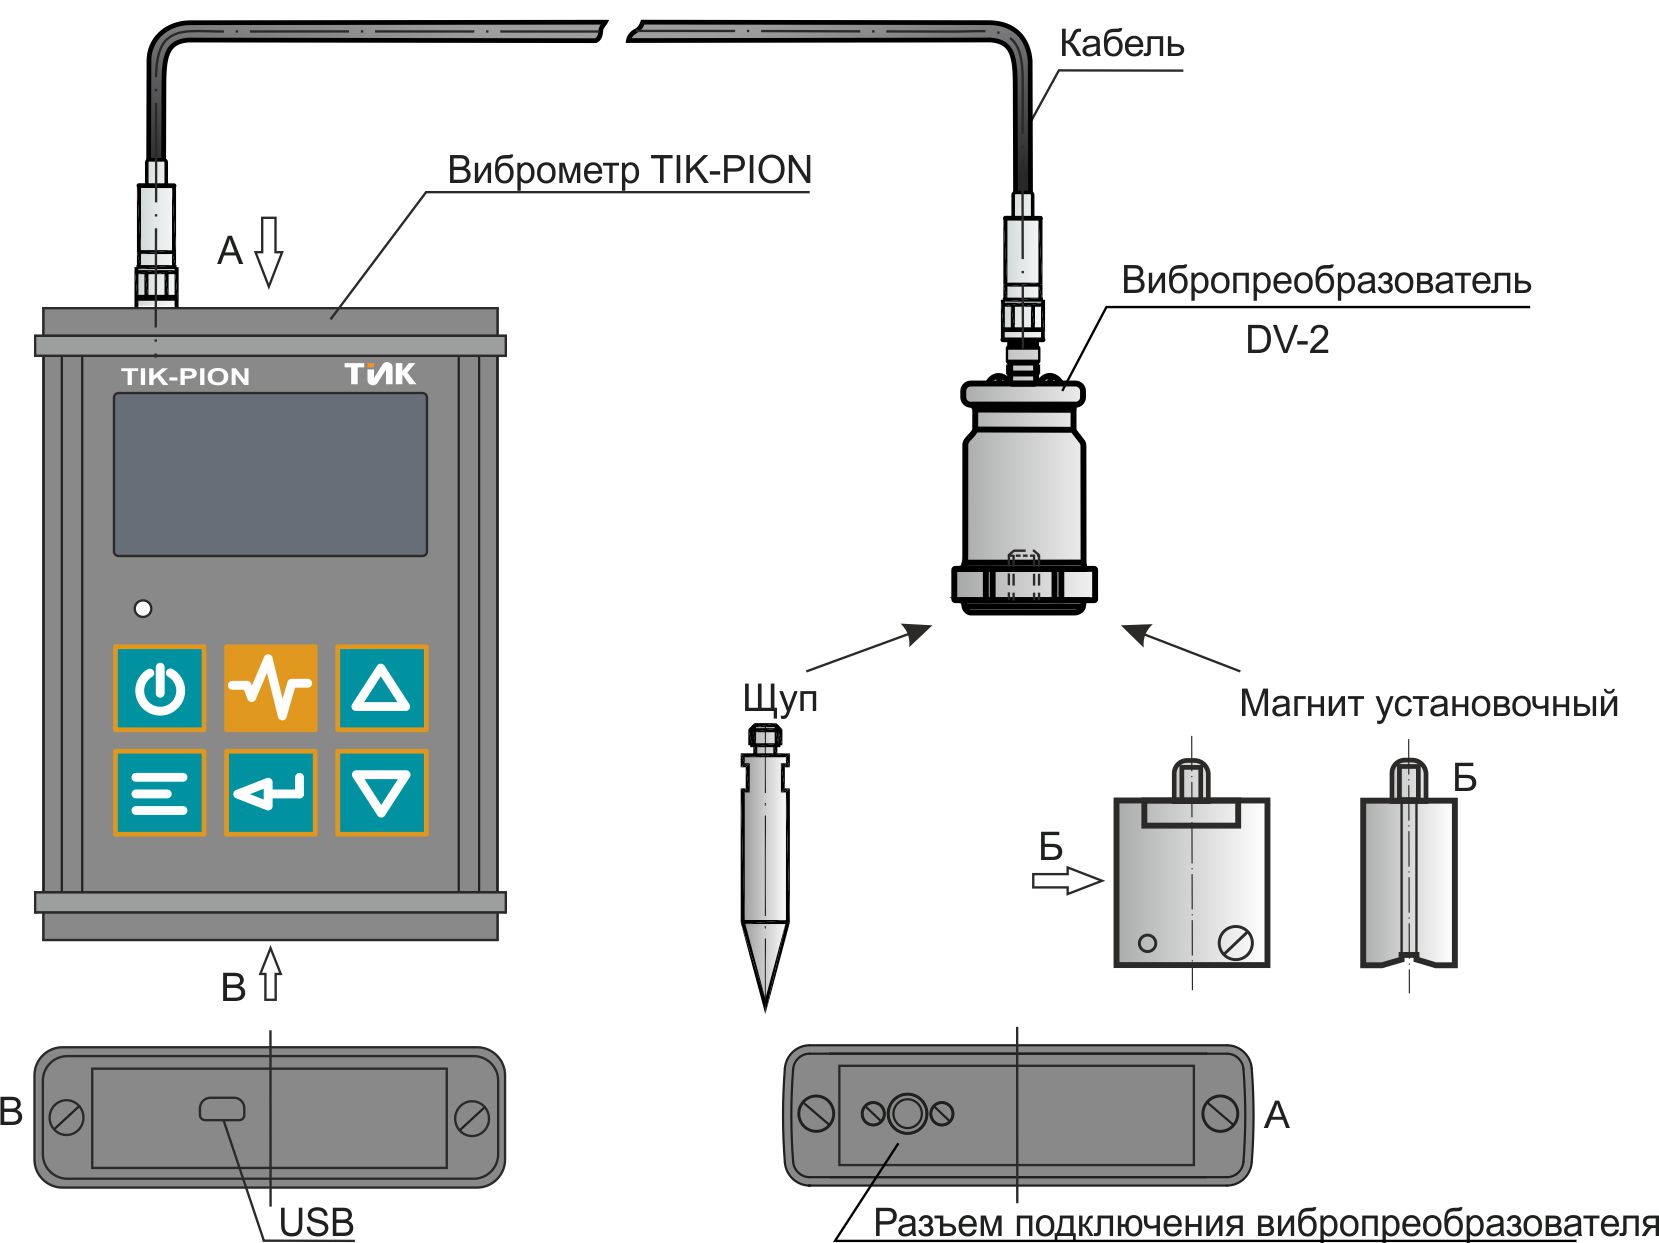 Схема подключения виброметра TIK-PION и подготовка изделия для установки шпильки М6-6Gх16